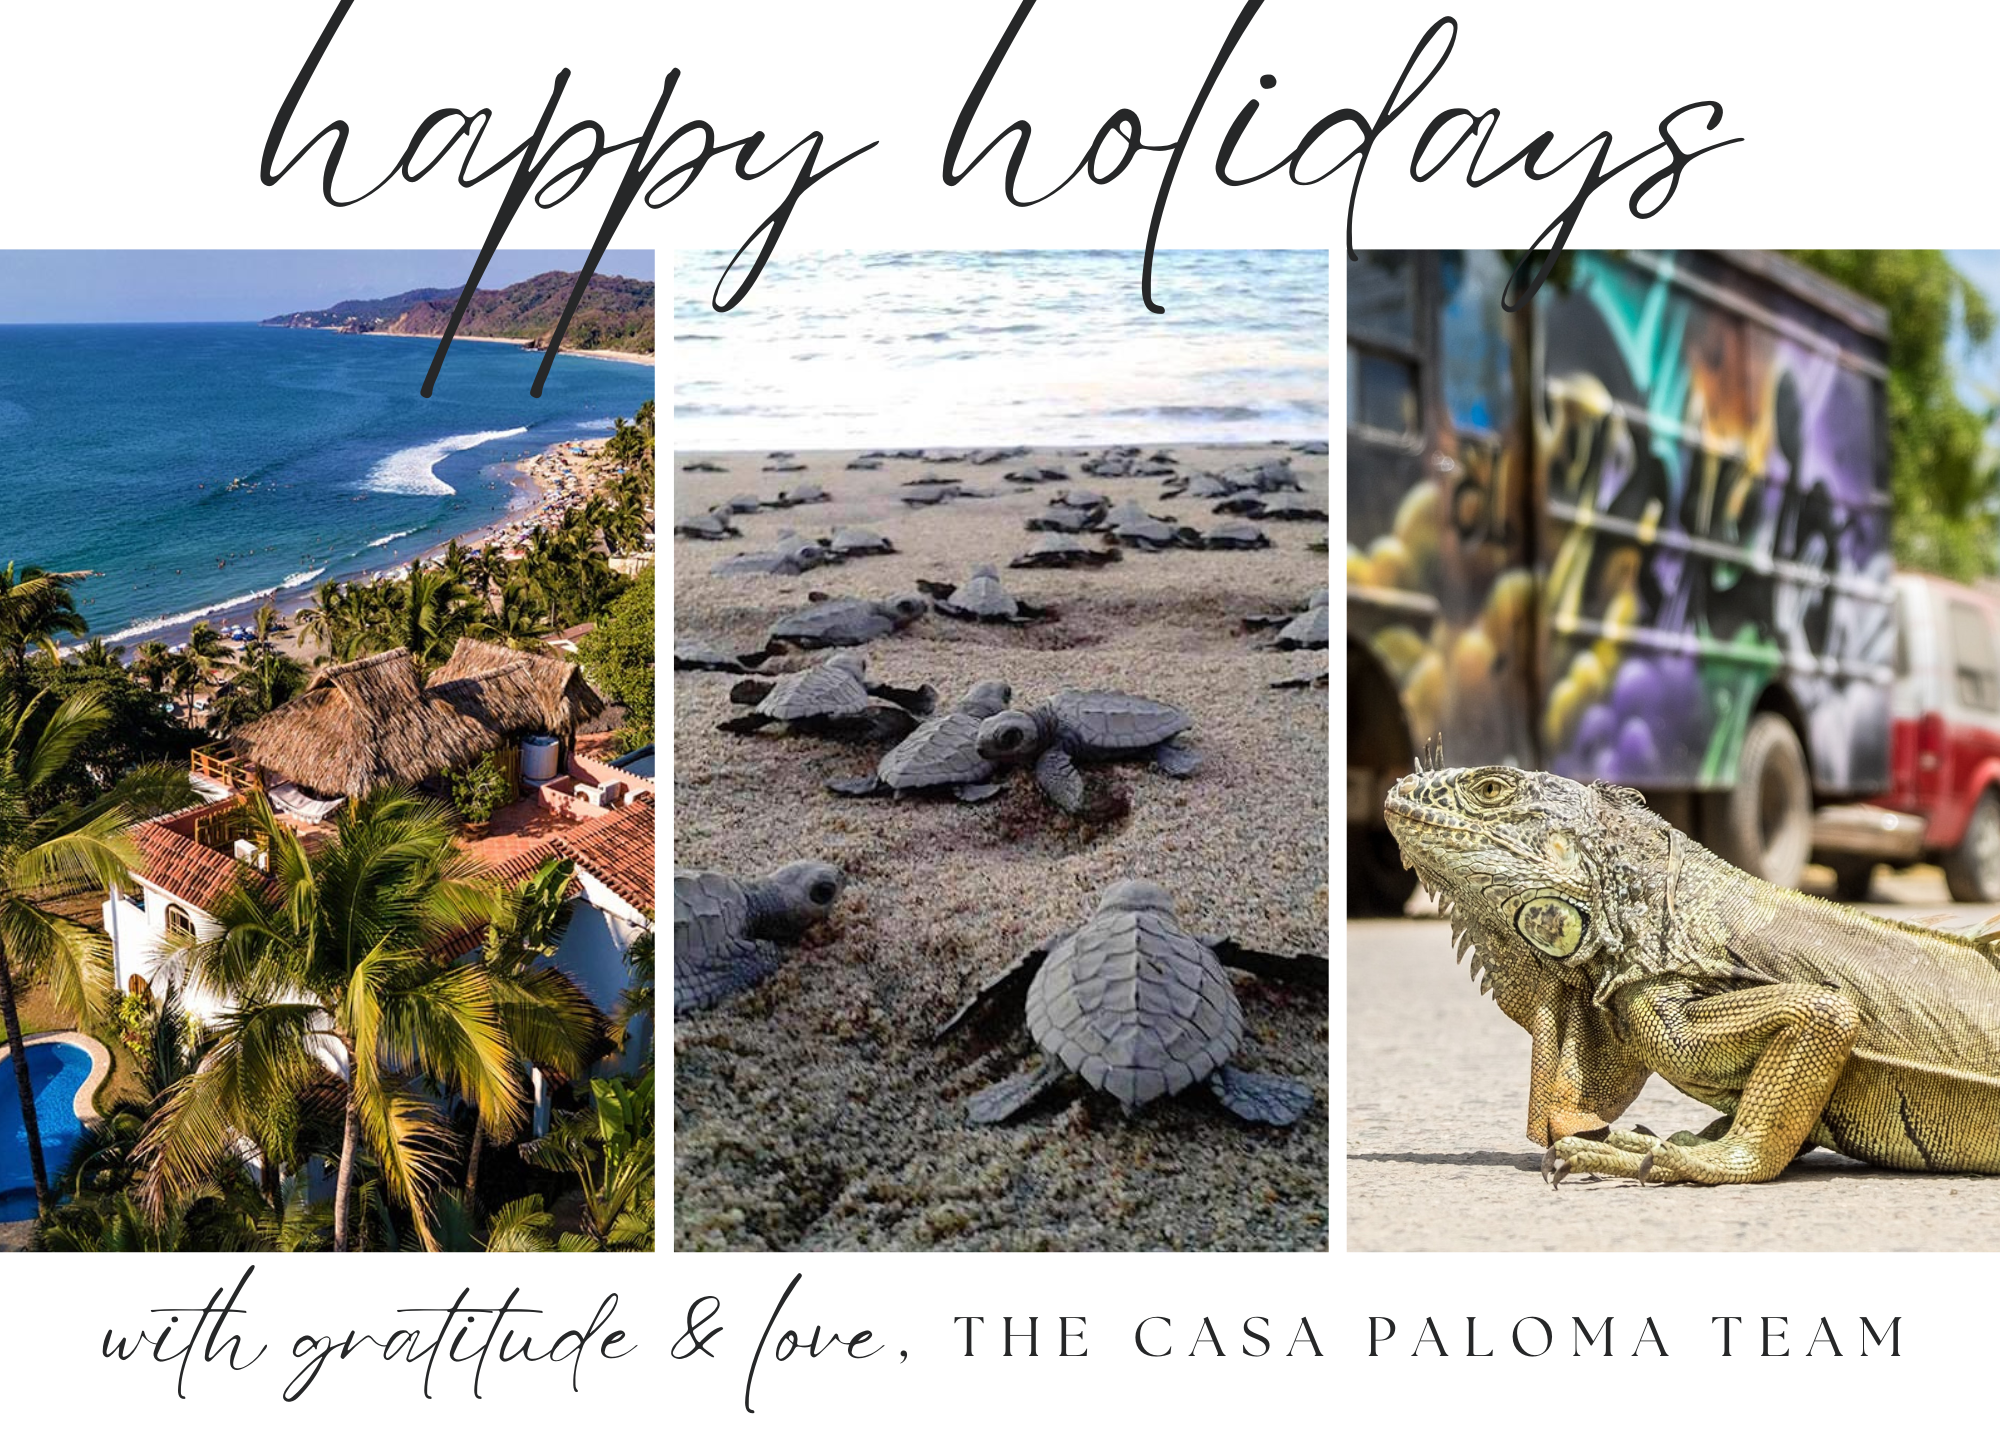 Happy holidays for the Casa Paloma team!